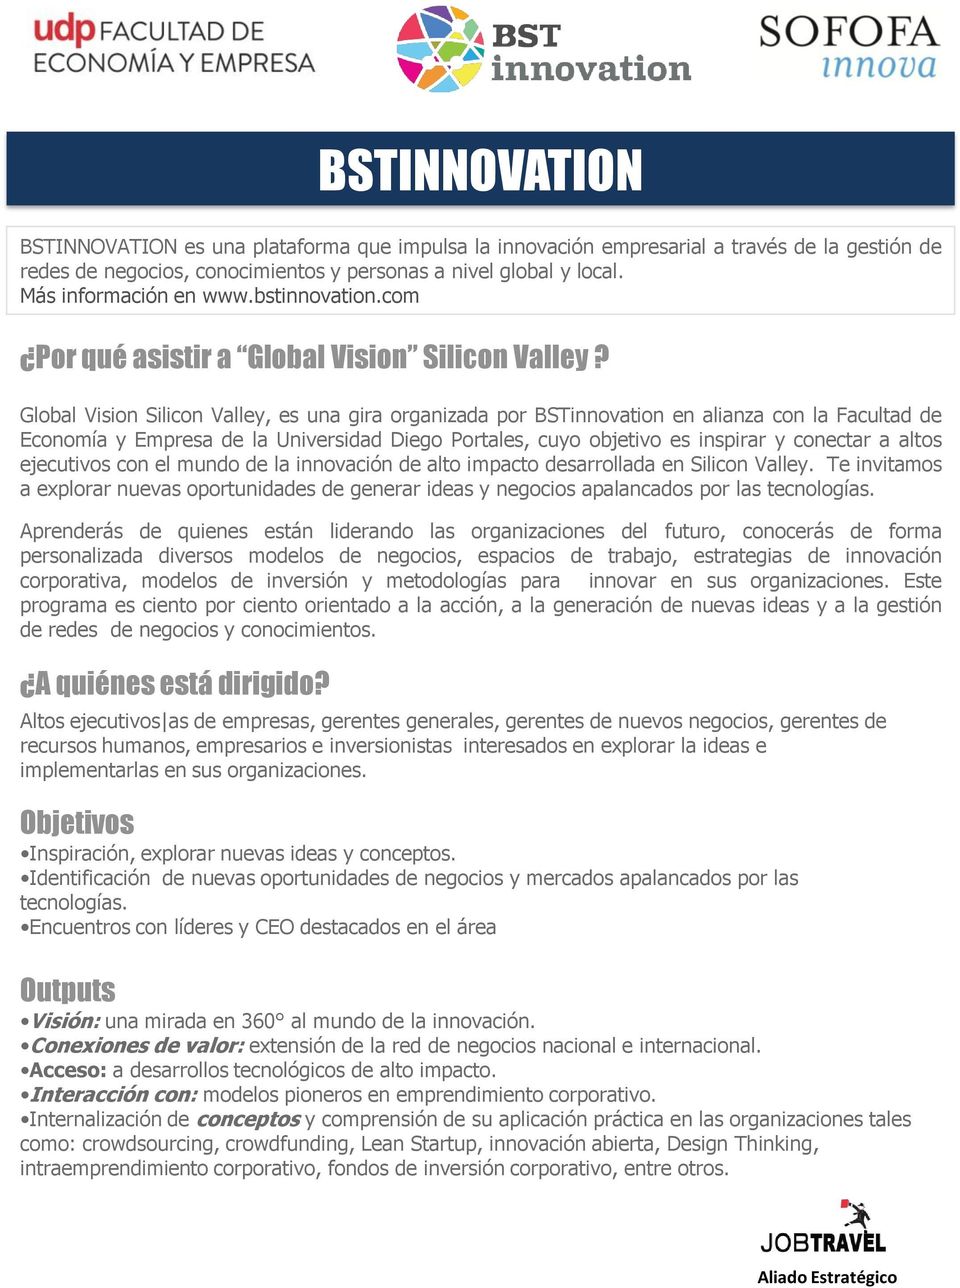 Global Vision Silicon Valley, es una gira organizada por BSTinnovation en alianza con la Facultad de Economía y Empresa de la Universidad Diego Portales, cuyo objetivo es inspirar y conectar a altos